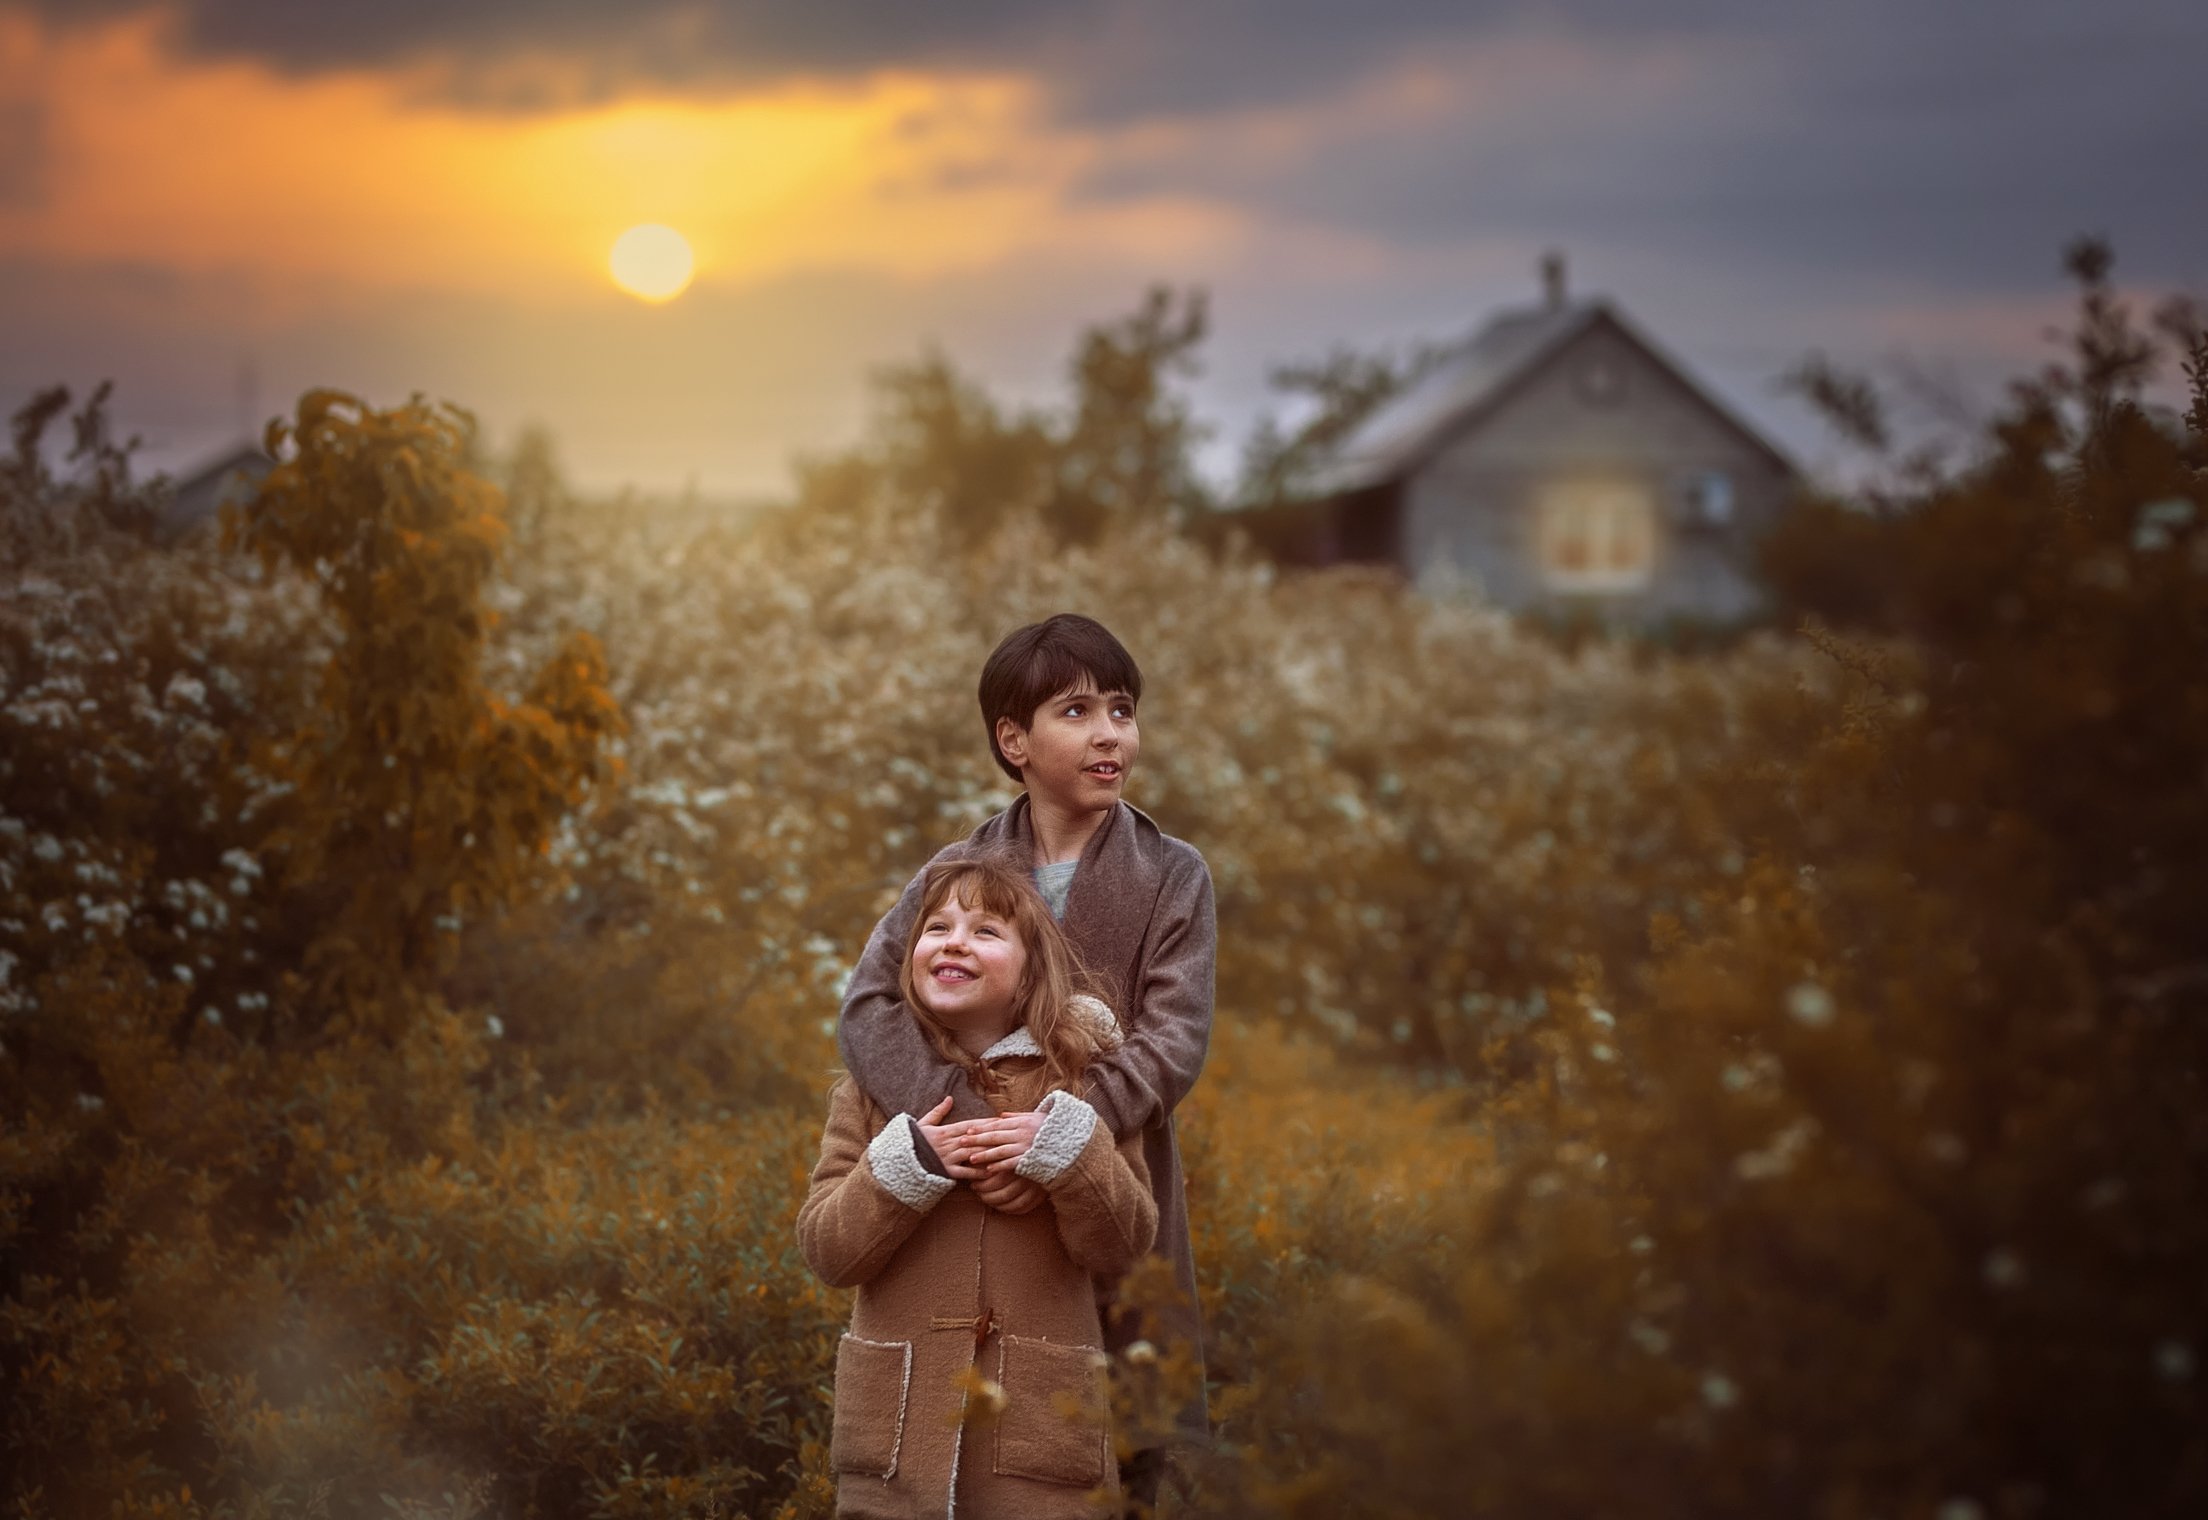 дети кузены  деревня весна закат радость веселье домик цветущие кусты отдых, Марина Еленчук